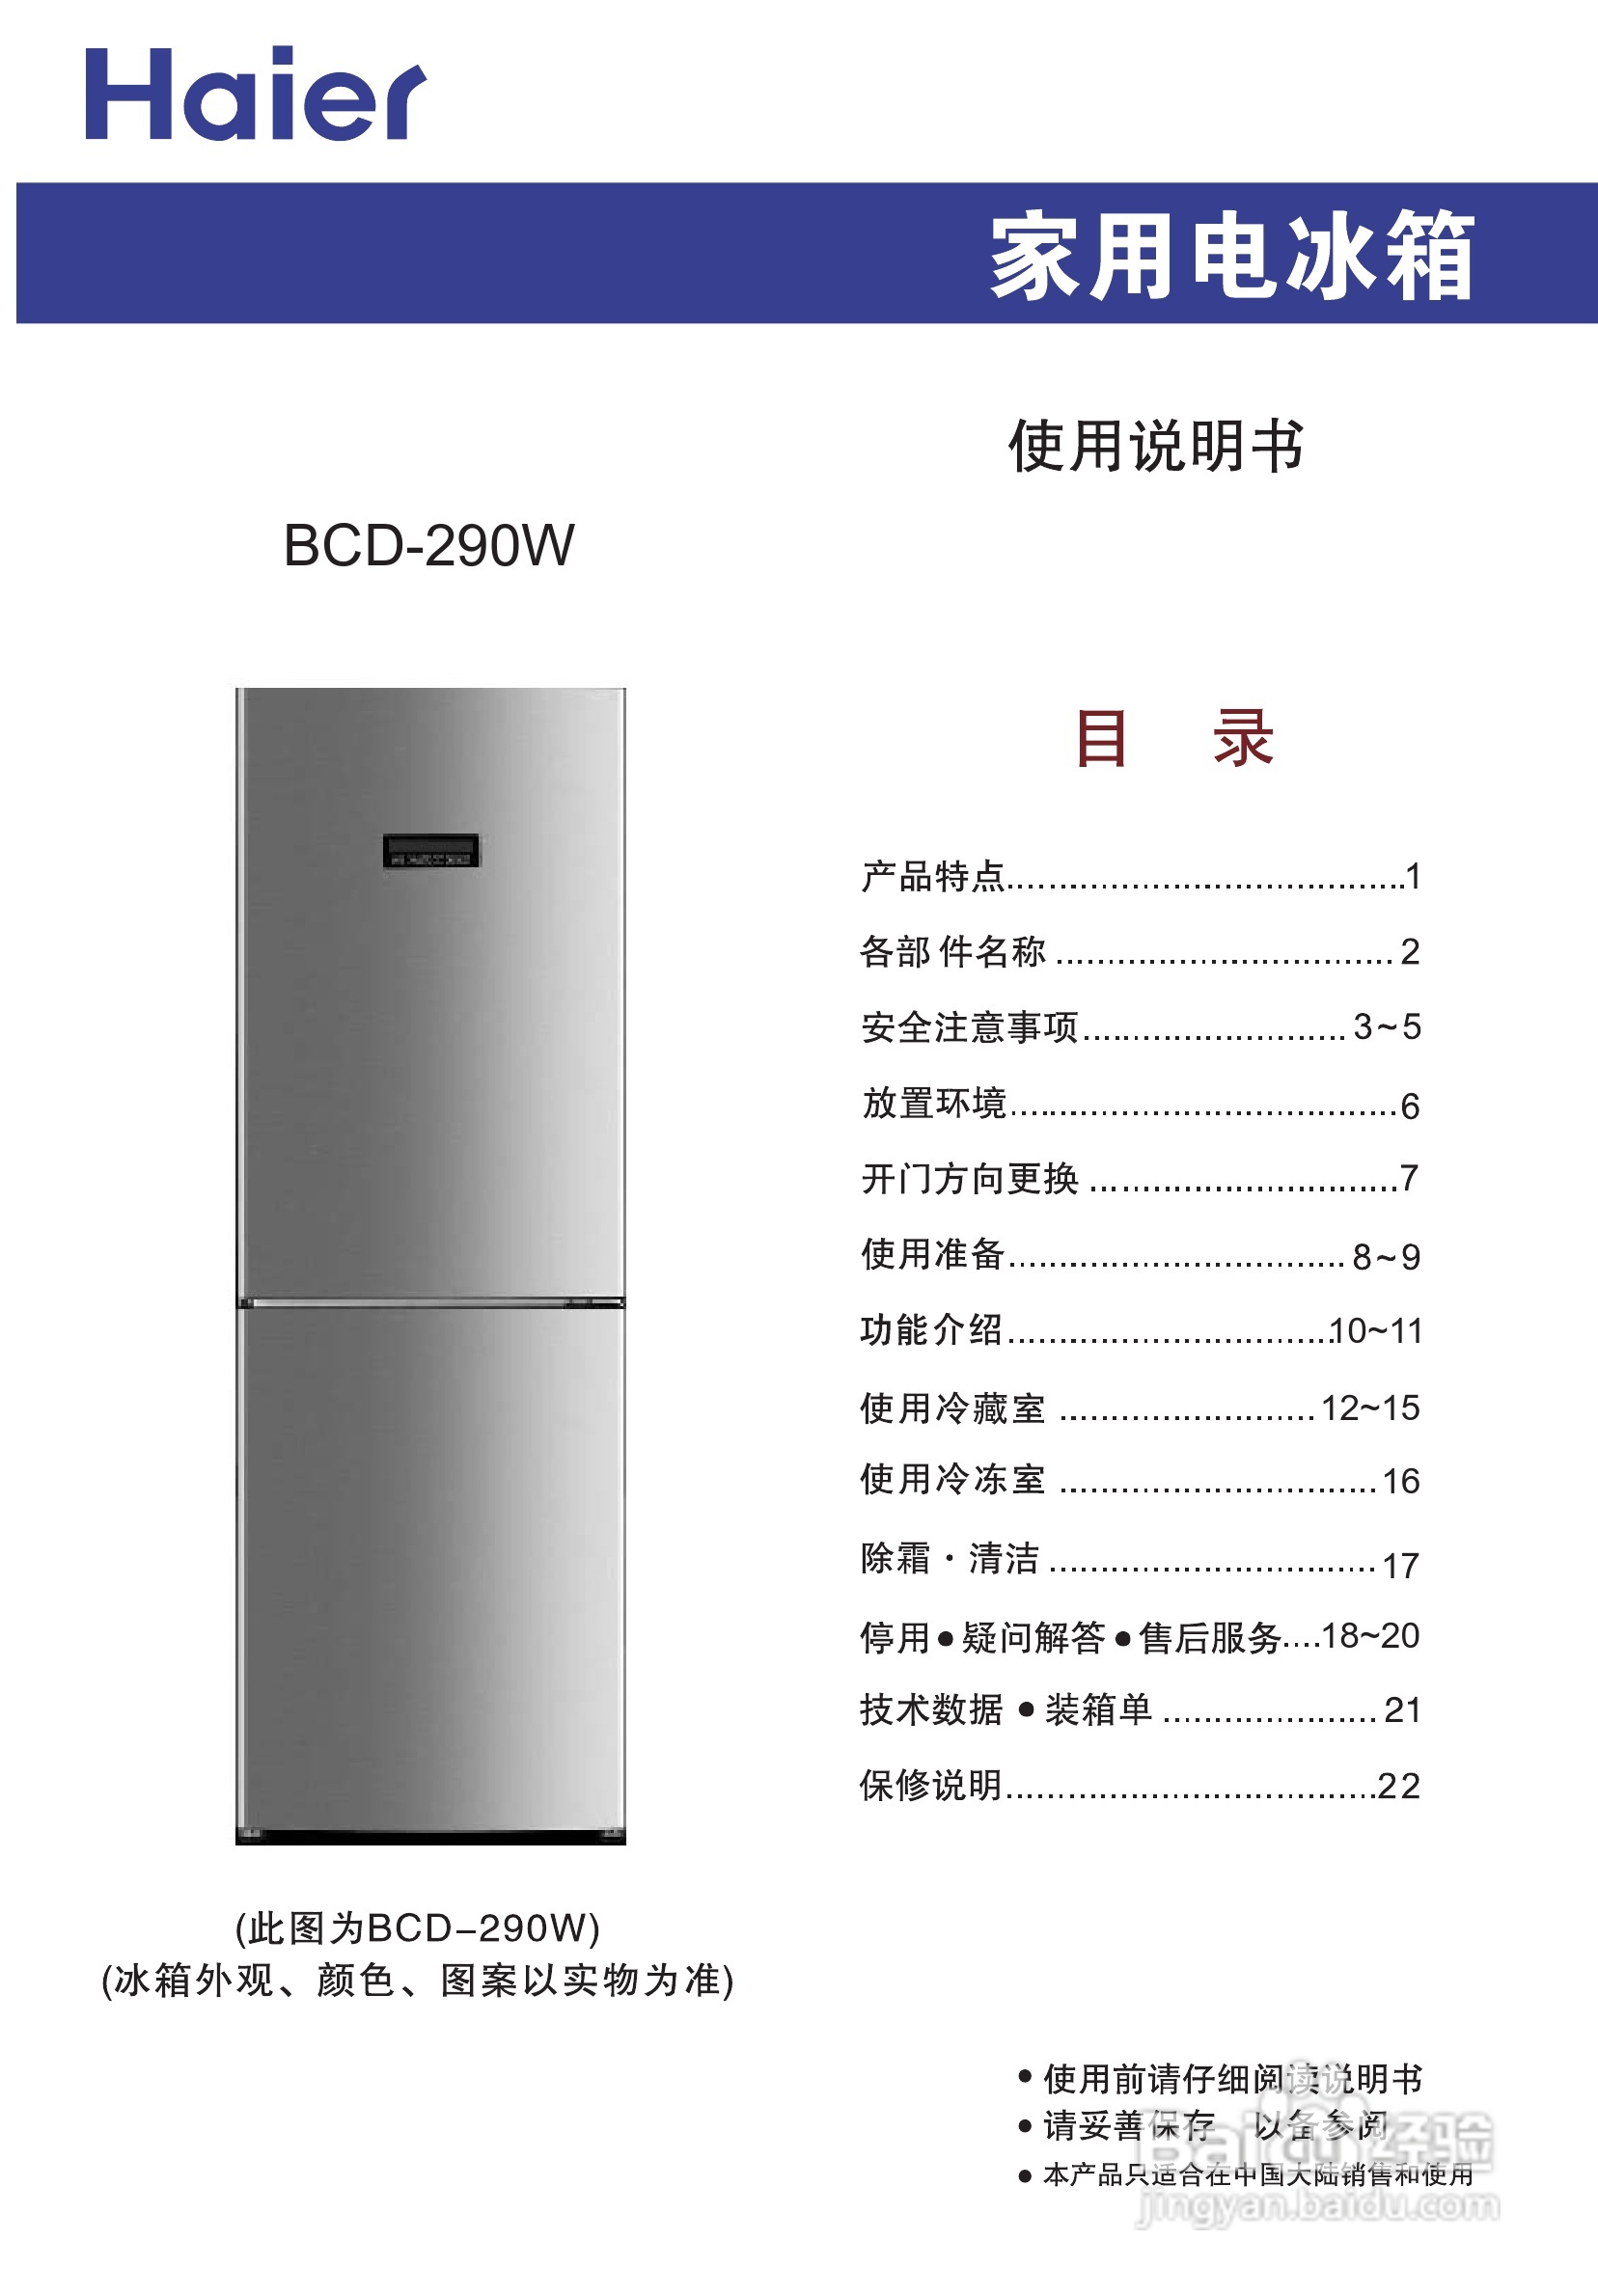 海尔bcd-290w电冰箱使用说明书:[1]